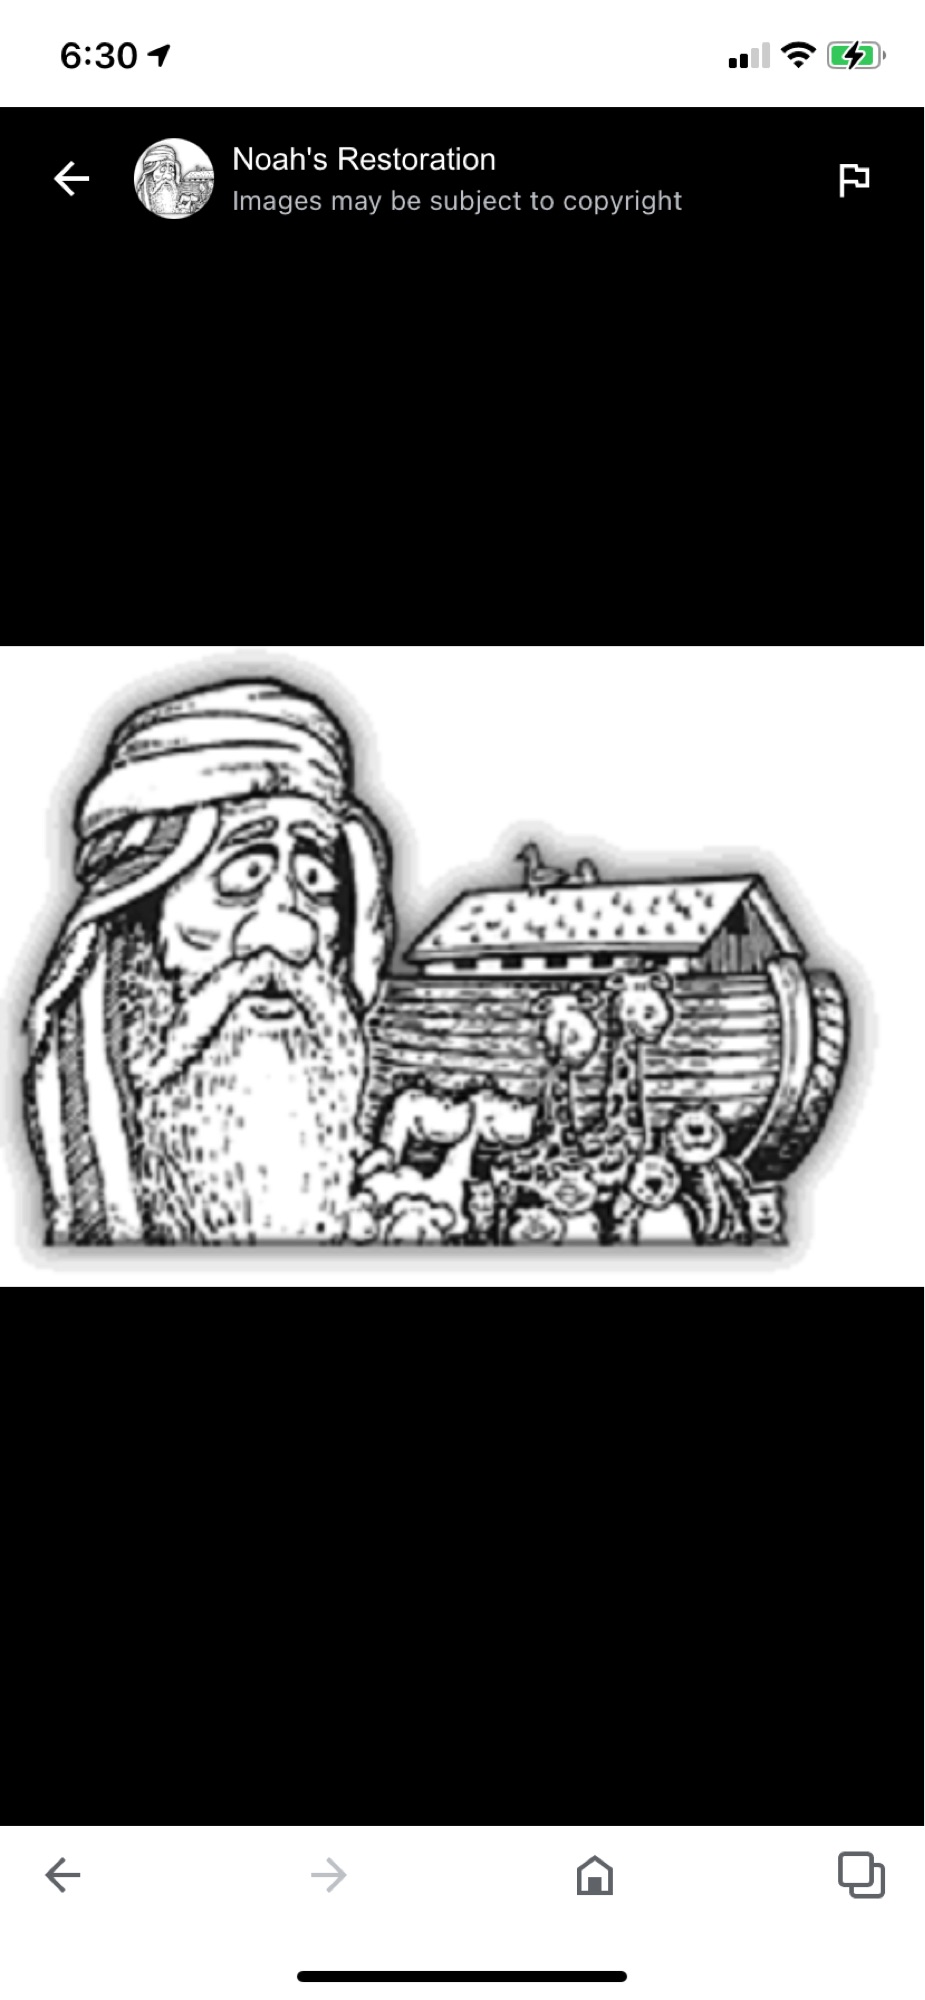 Noah's Restoration Logo